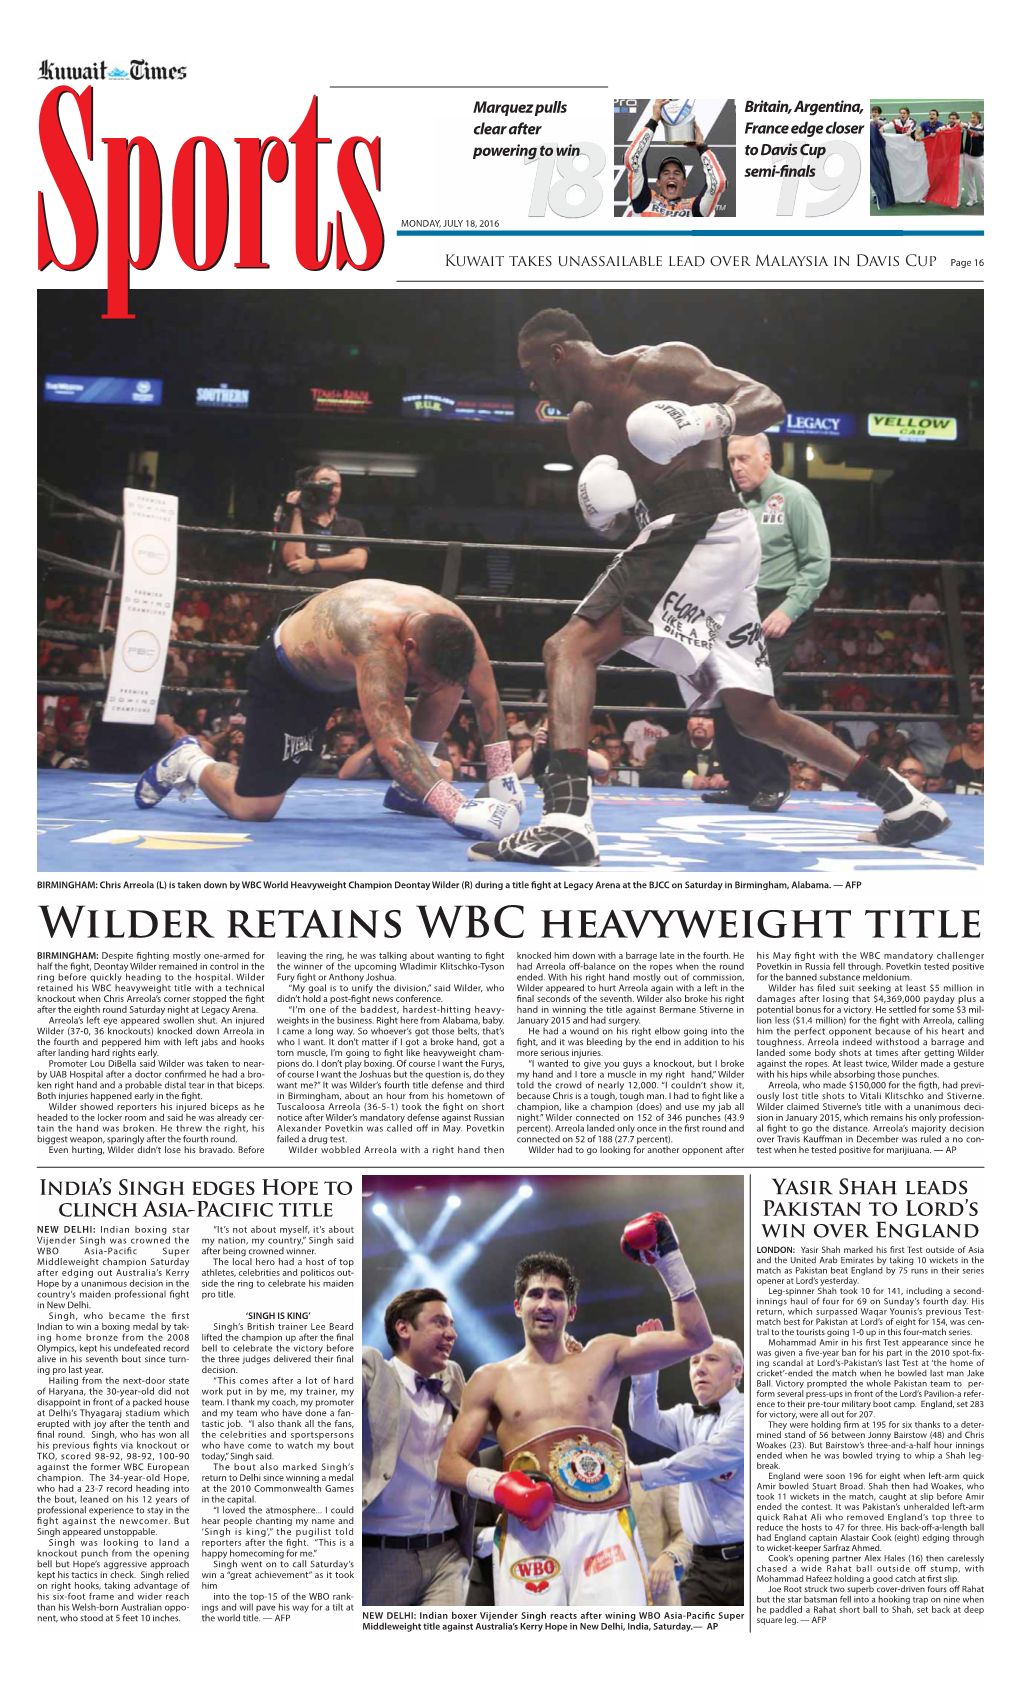 Wilder Retains WBC Heavyweight Title